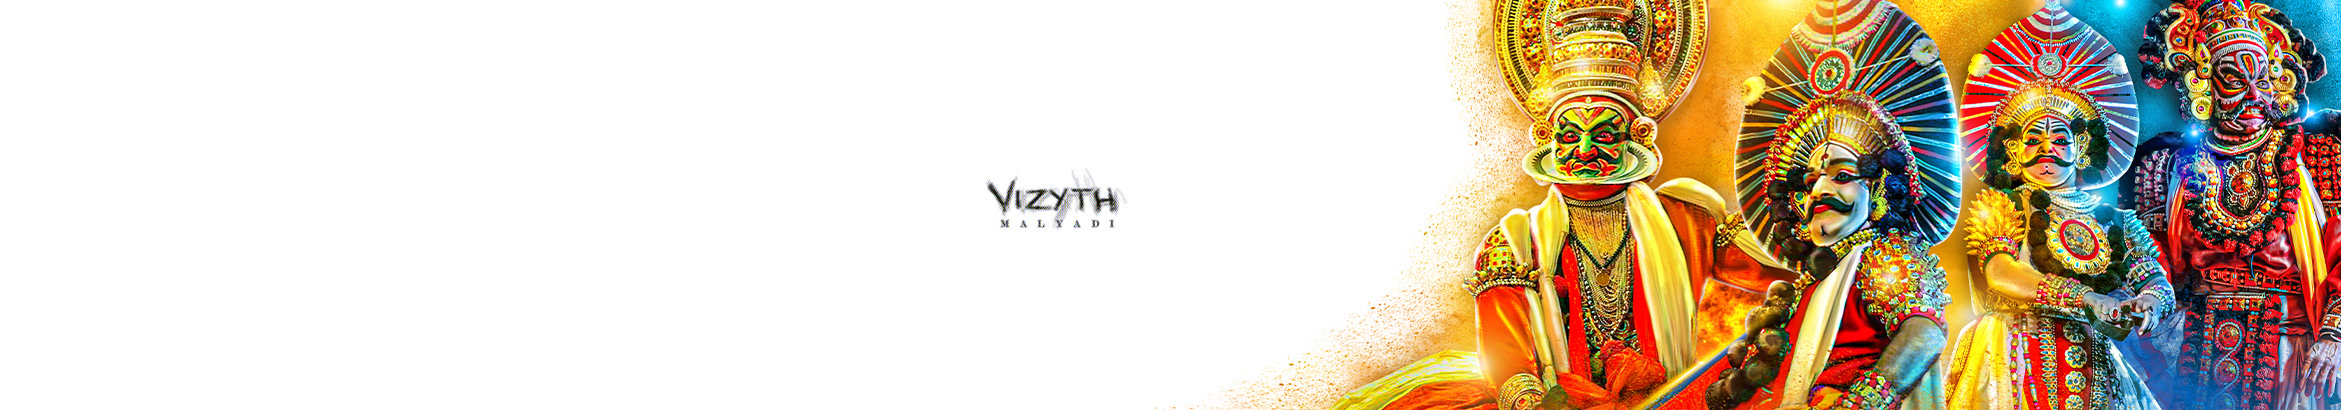 Banner de perfil de Vizyth Malyadi